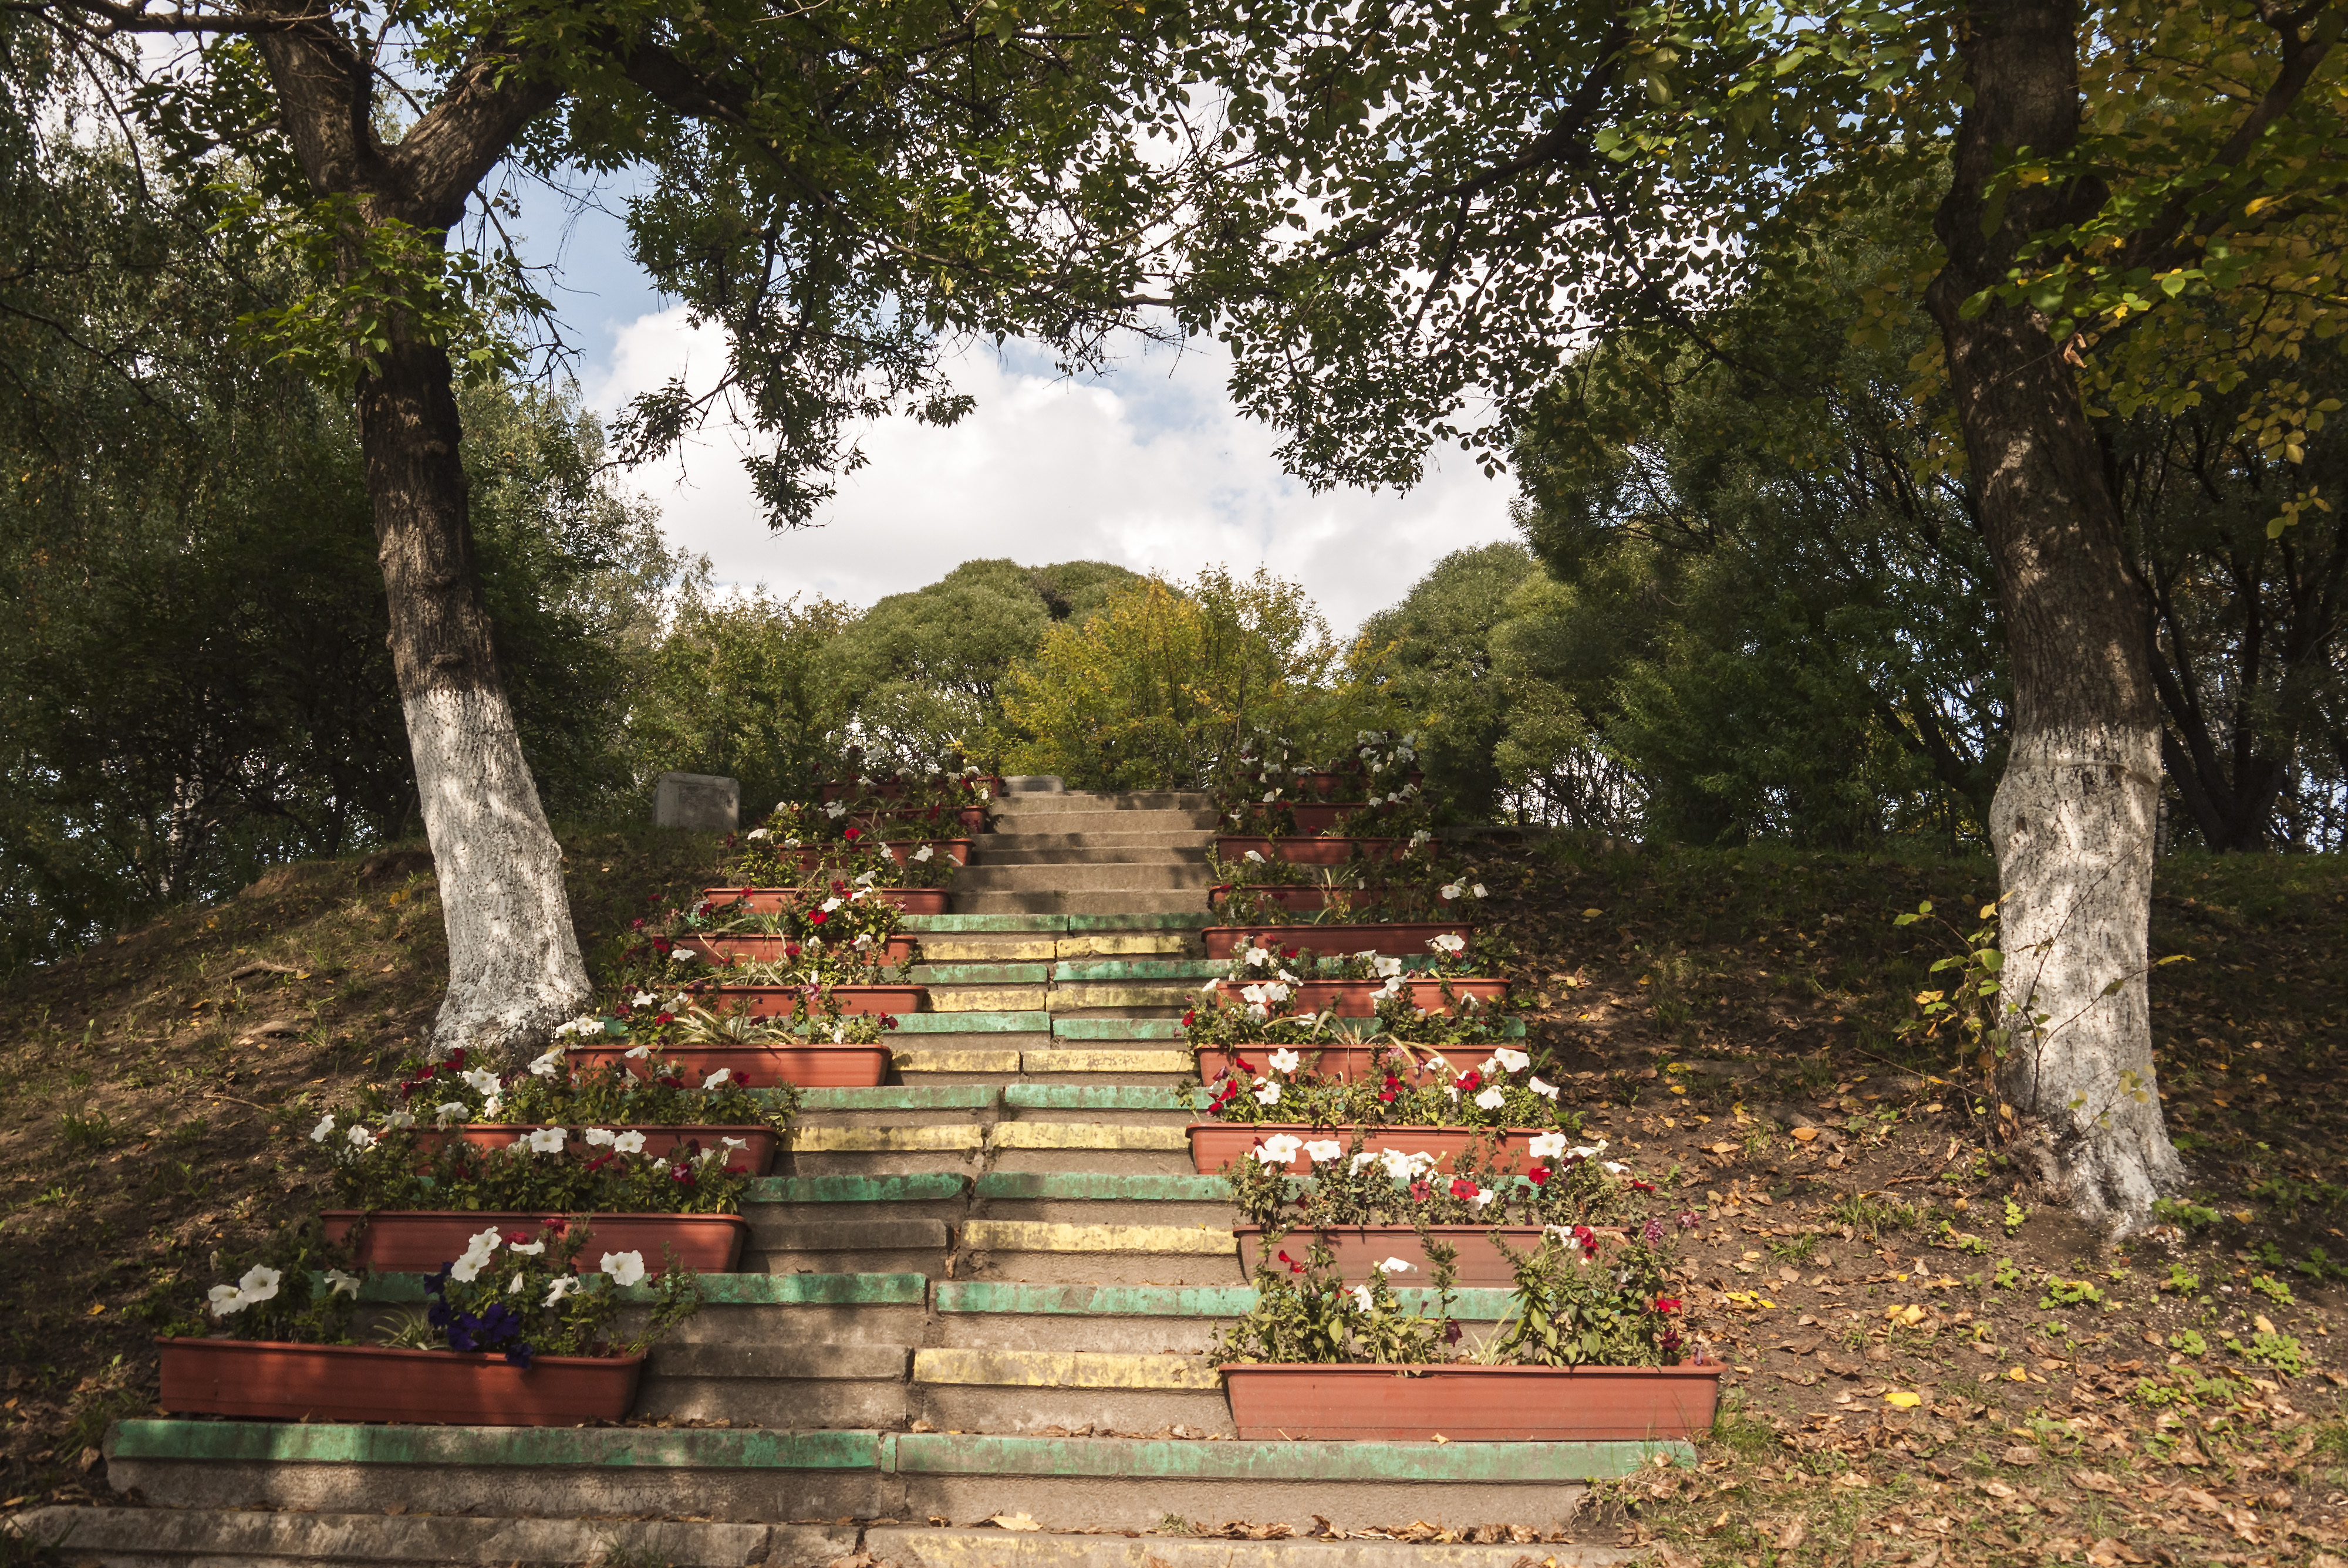 Парк взагалі, якось налаштувався на молодят, крім моста з замками, є ще сходи закоханих з плошками для квітів на сходинках